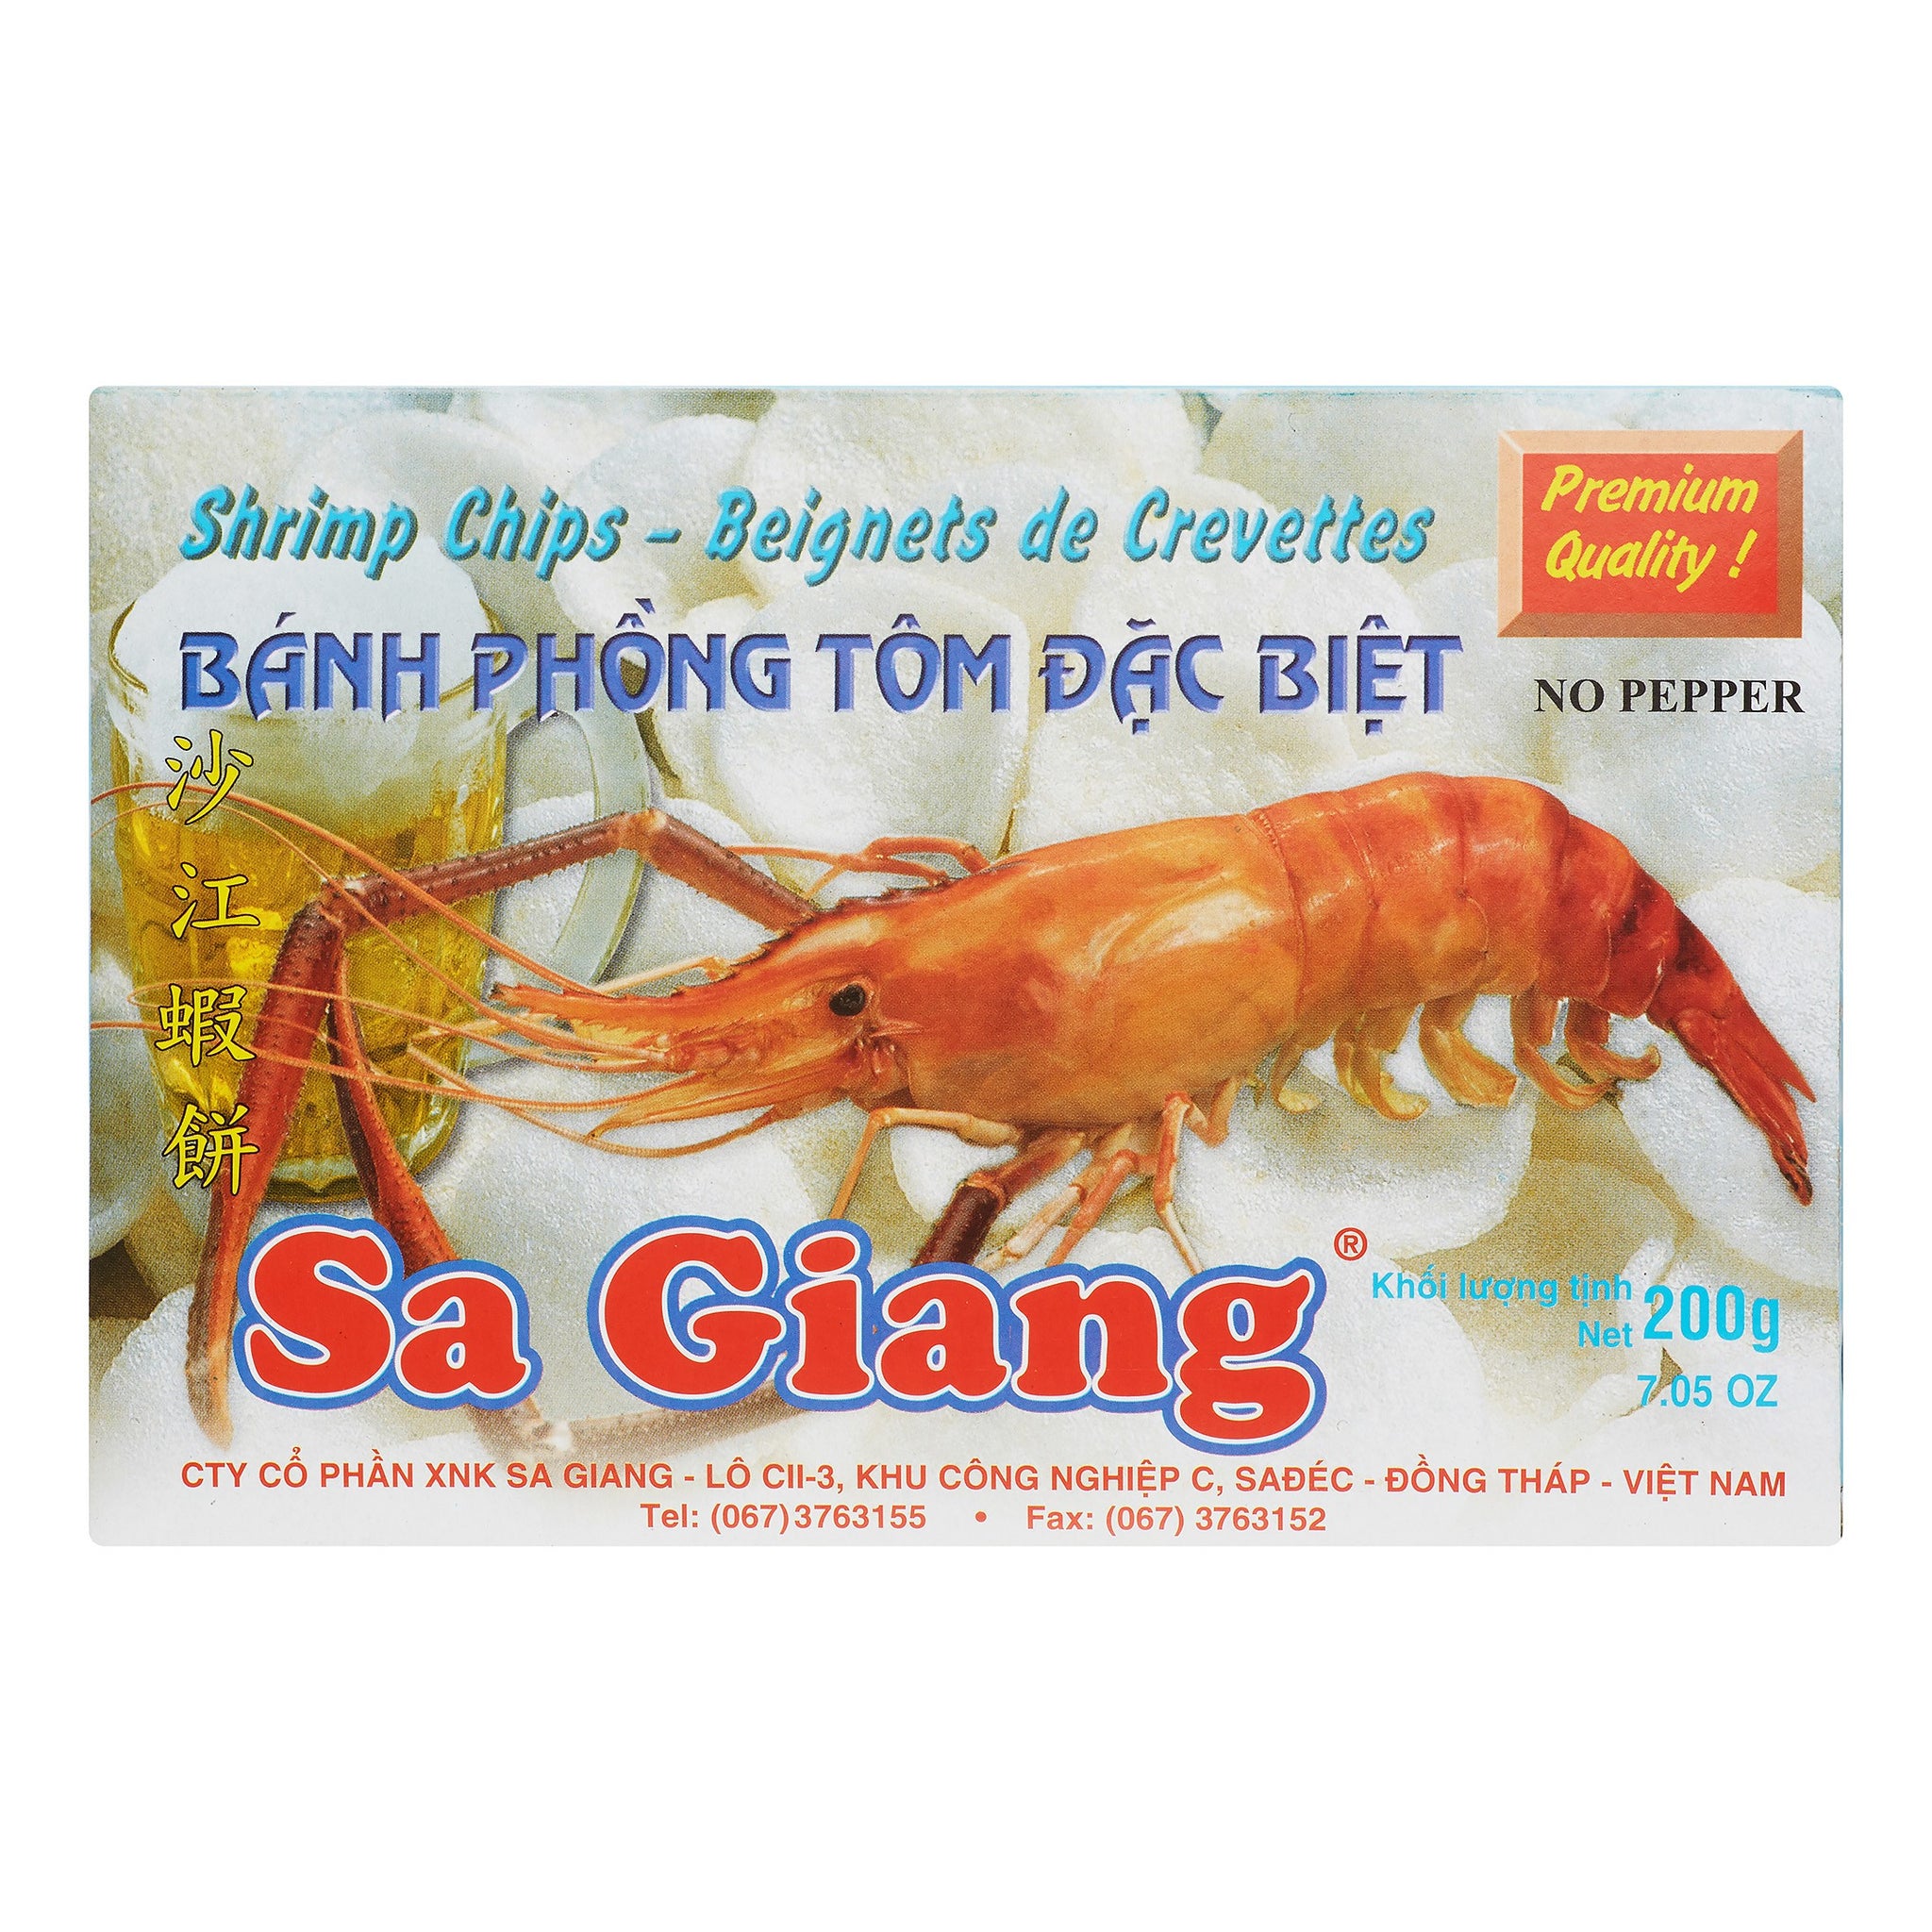 Sa Giang, Shrimp chips